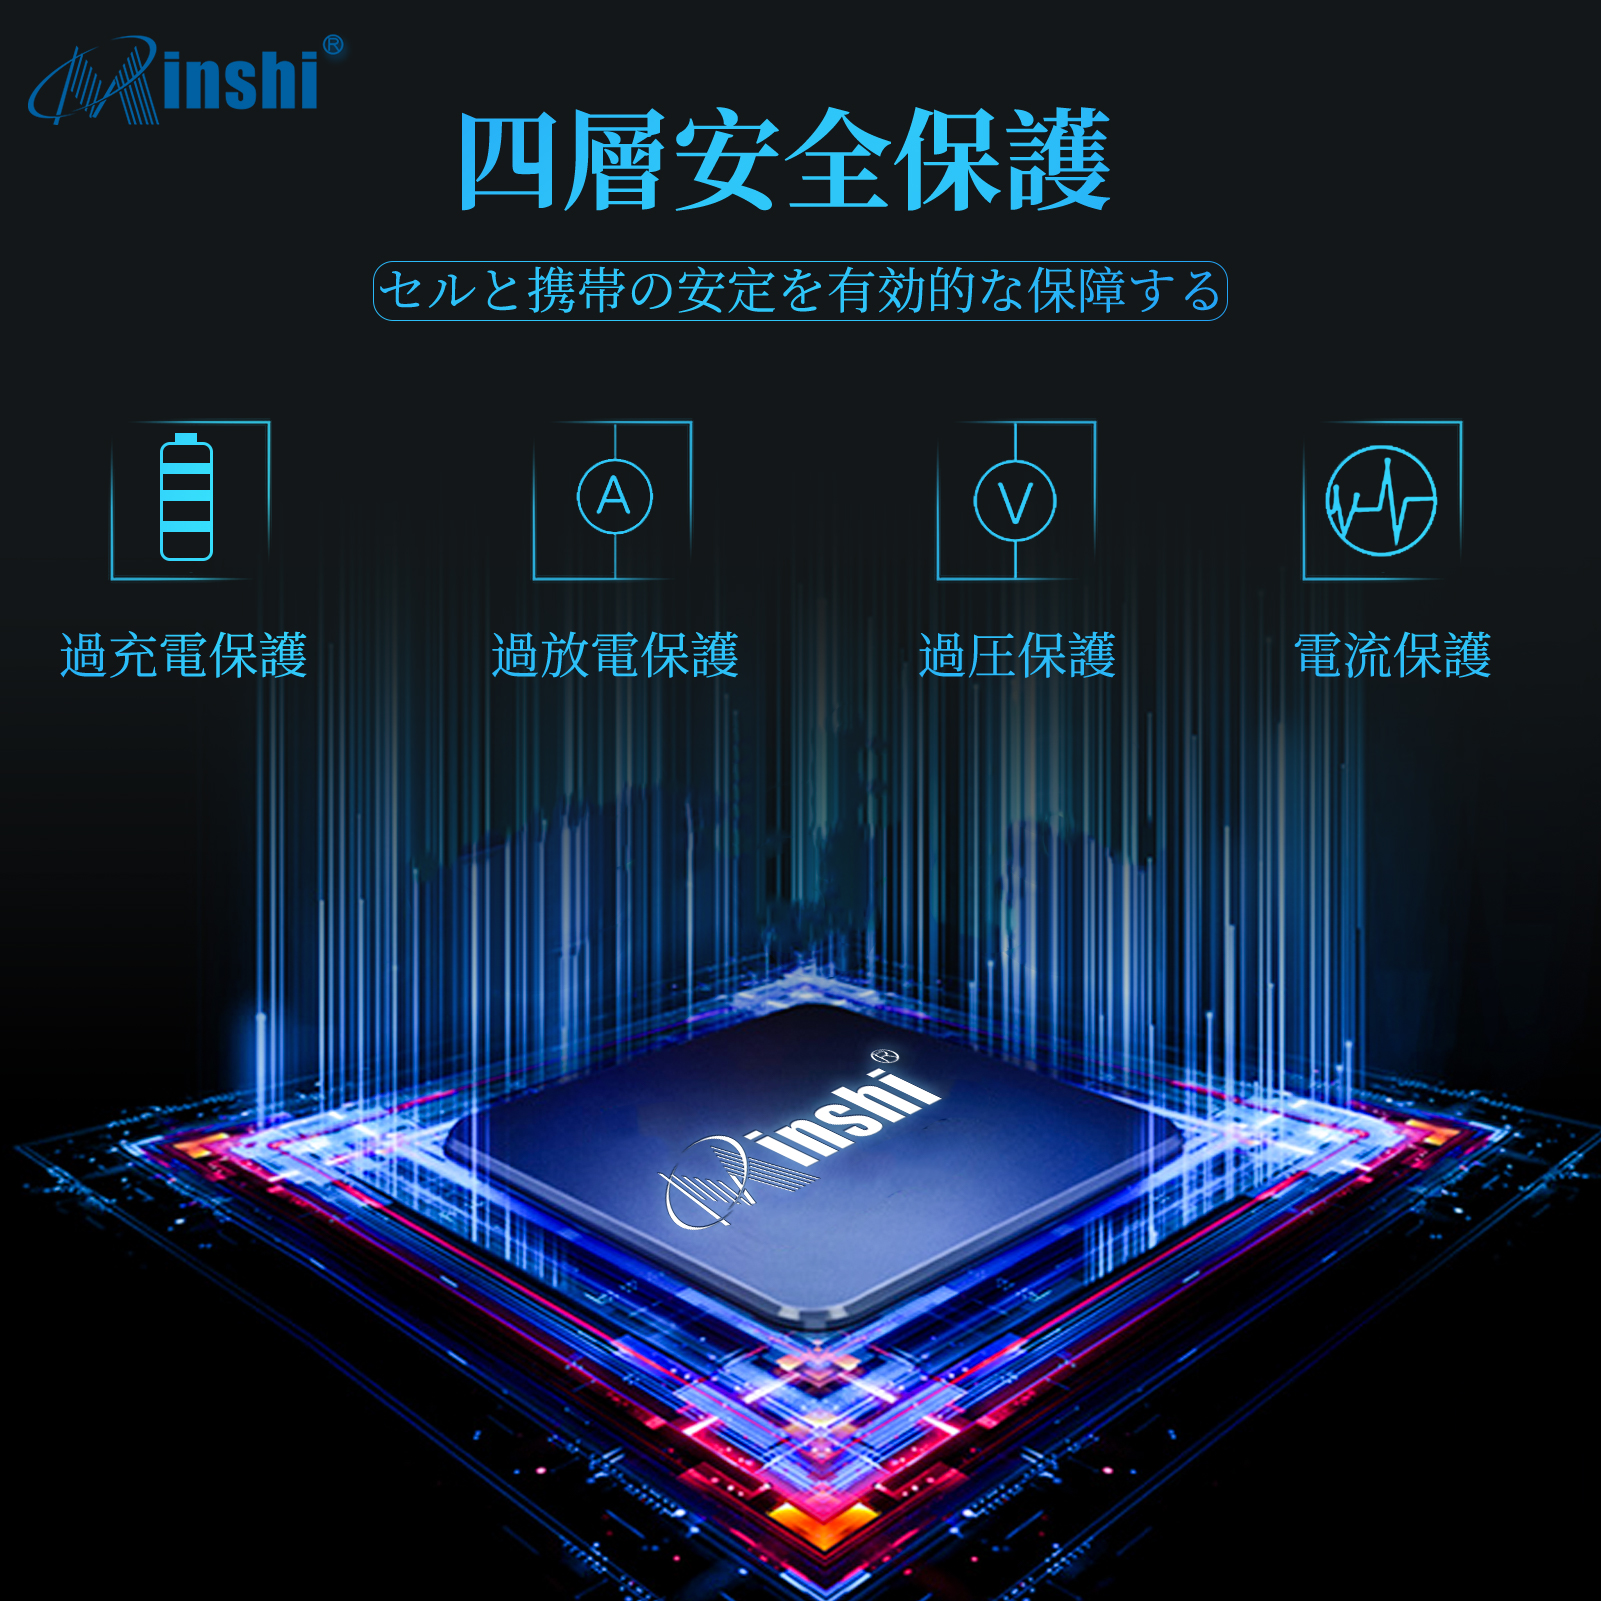  minshi  NTT docomo  F09 対応 互換バッテリー 770mAh PSE認定済 高品質互換バッテリー